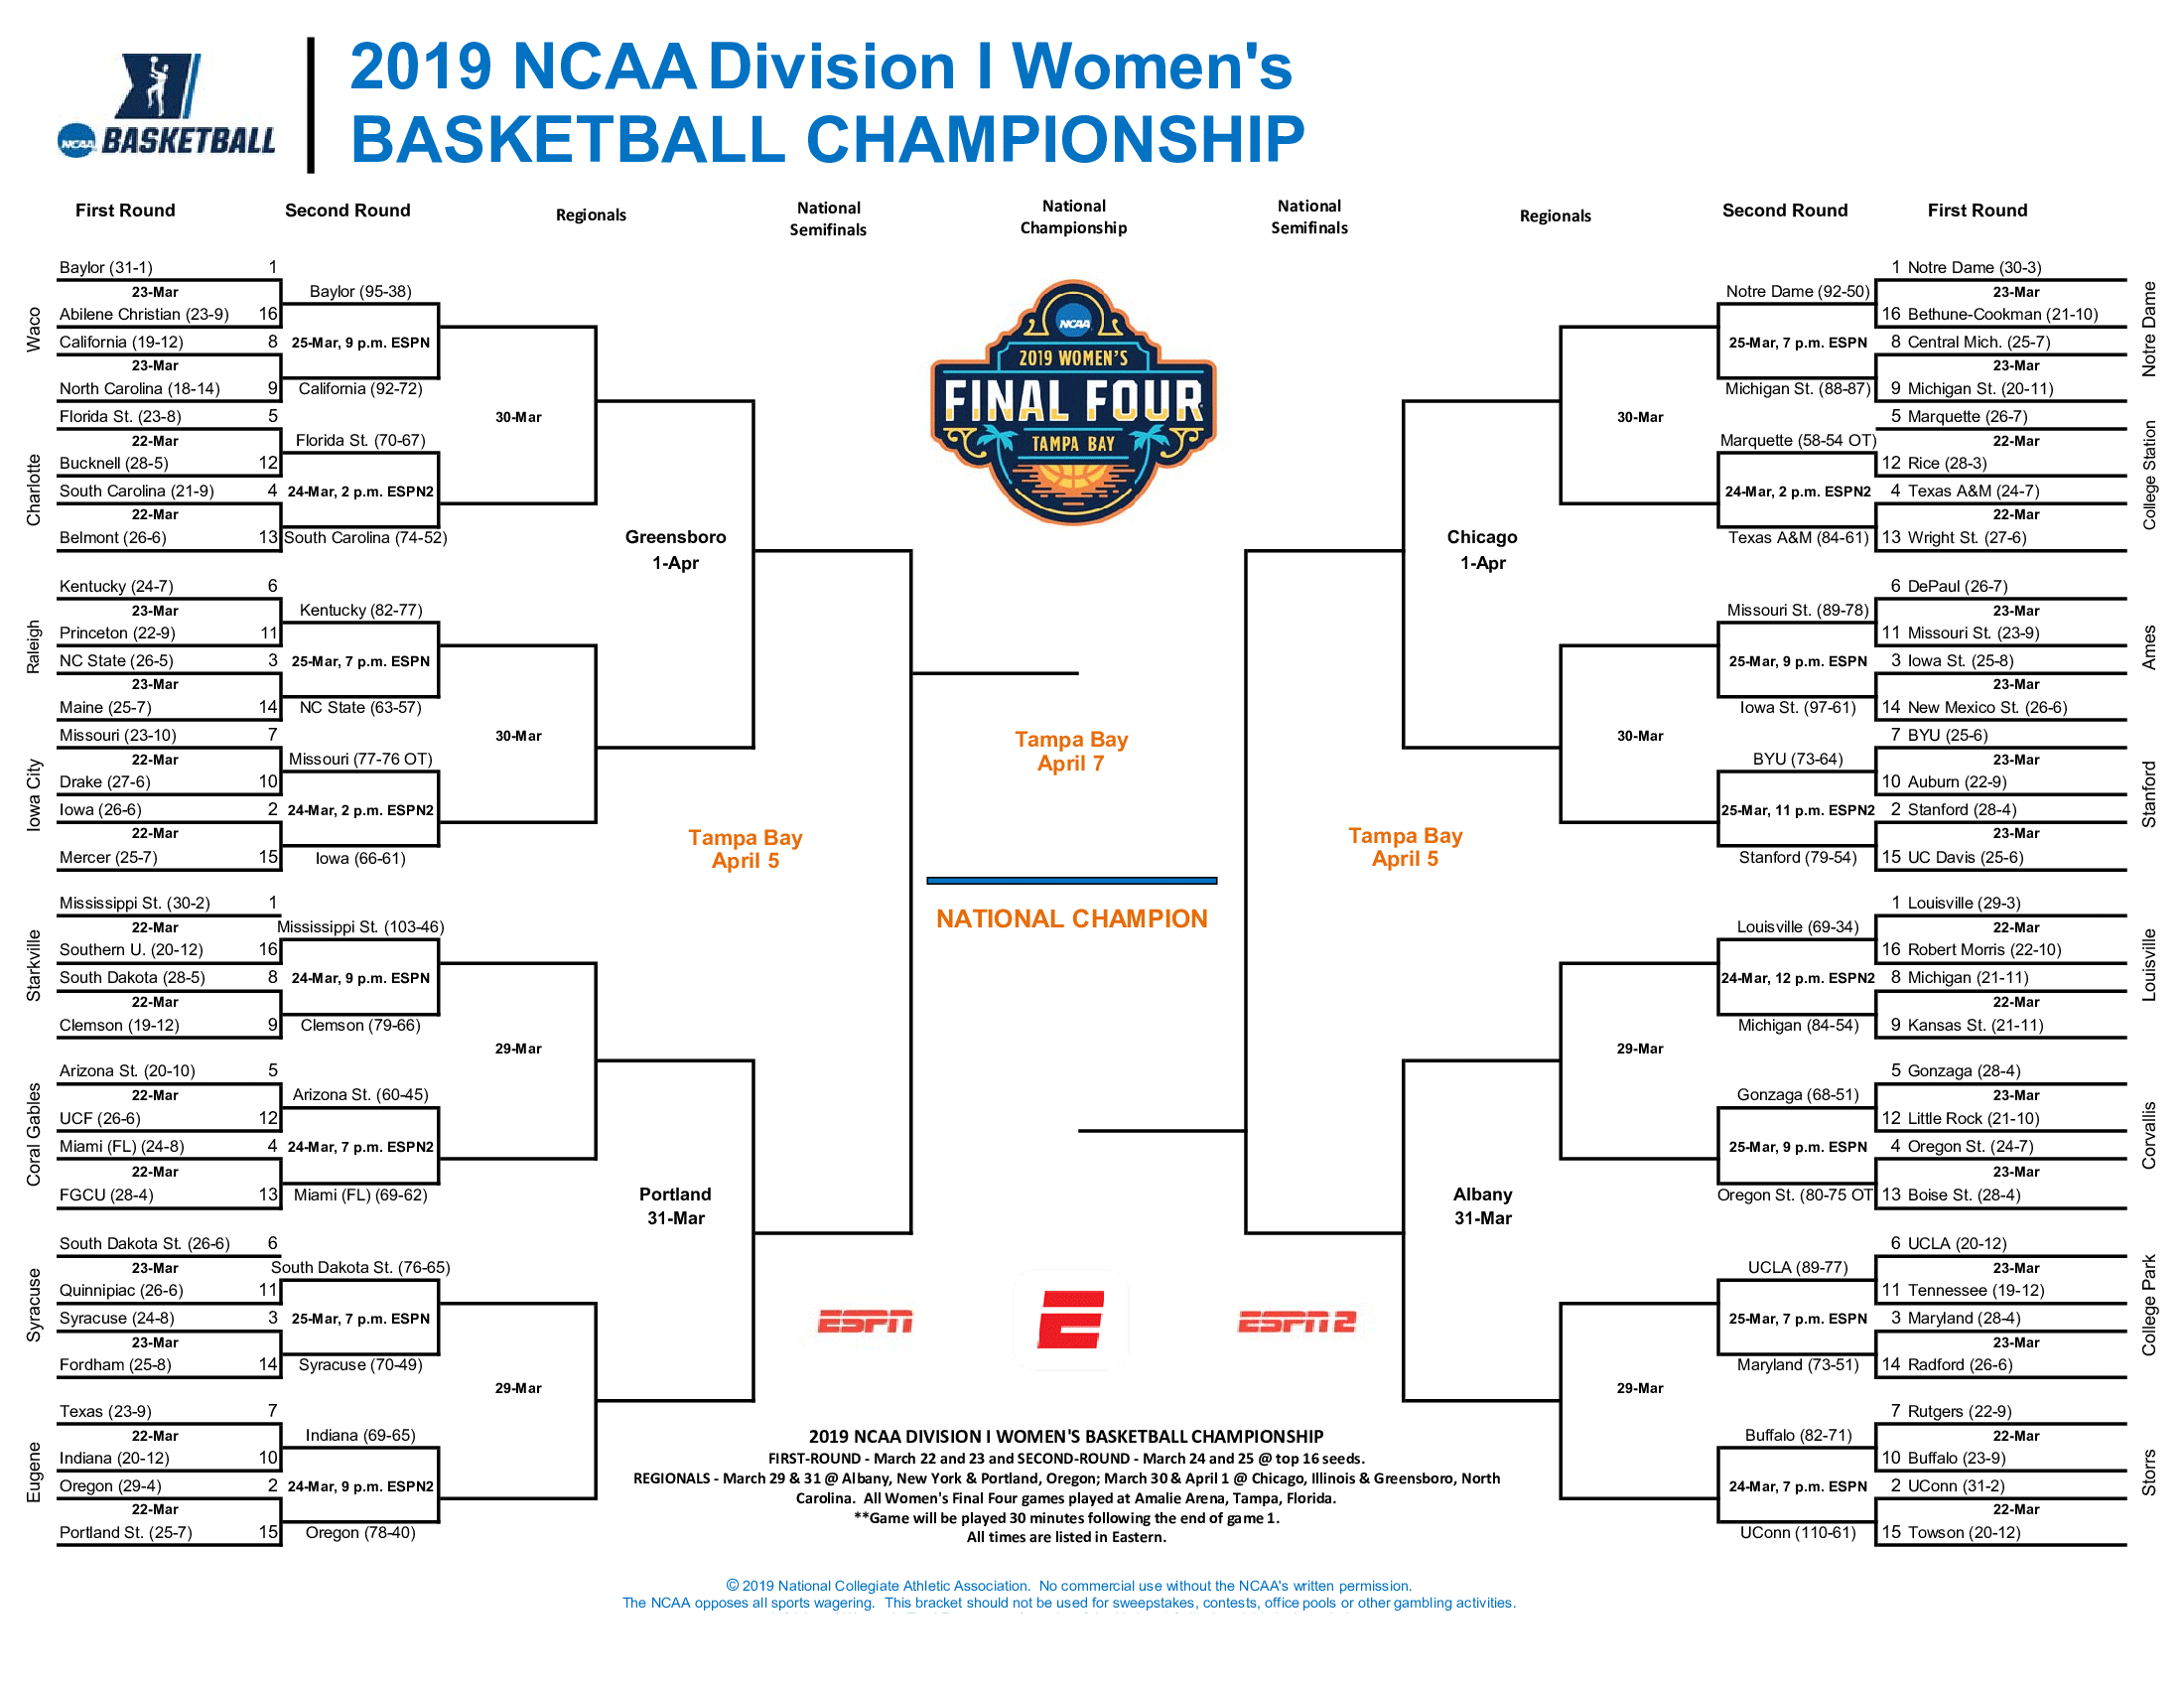 NCAA women's basketball tournament: Bracket, schedule